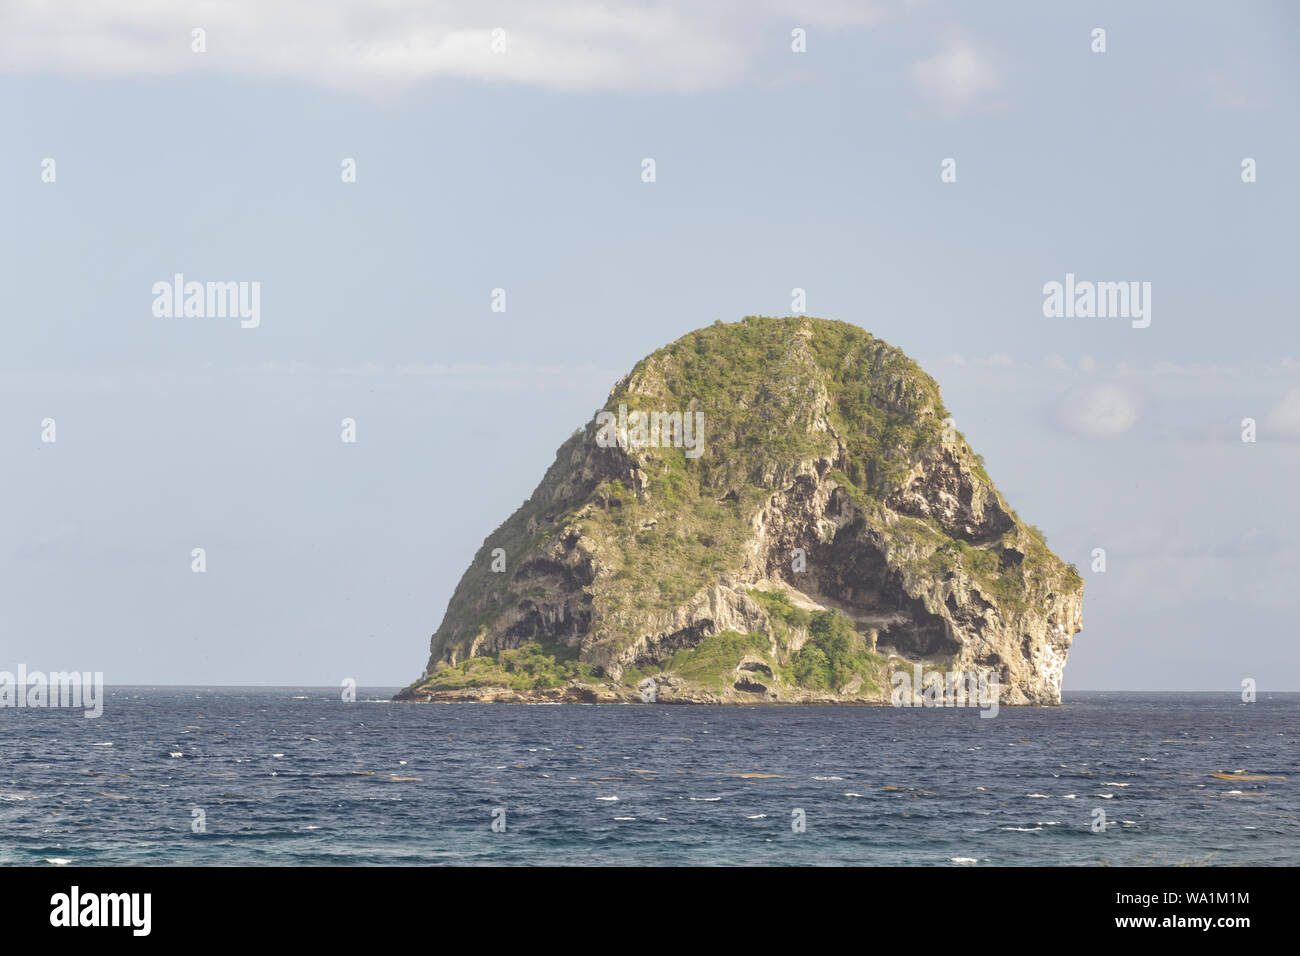 The Rocher du Diamant or Diamond Rock in Martinique. Stock Photo